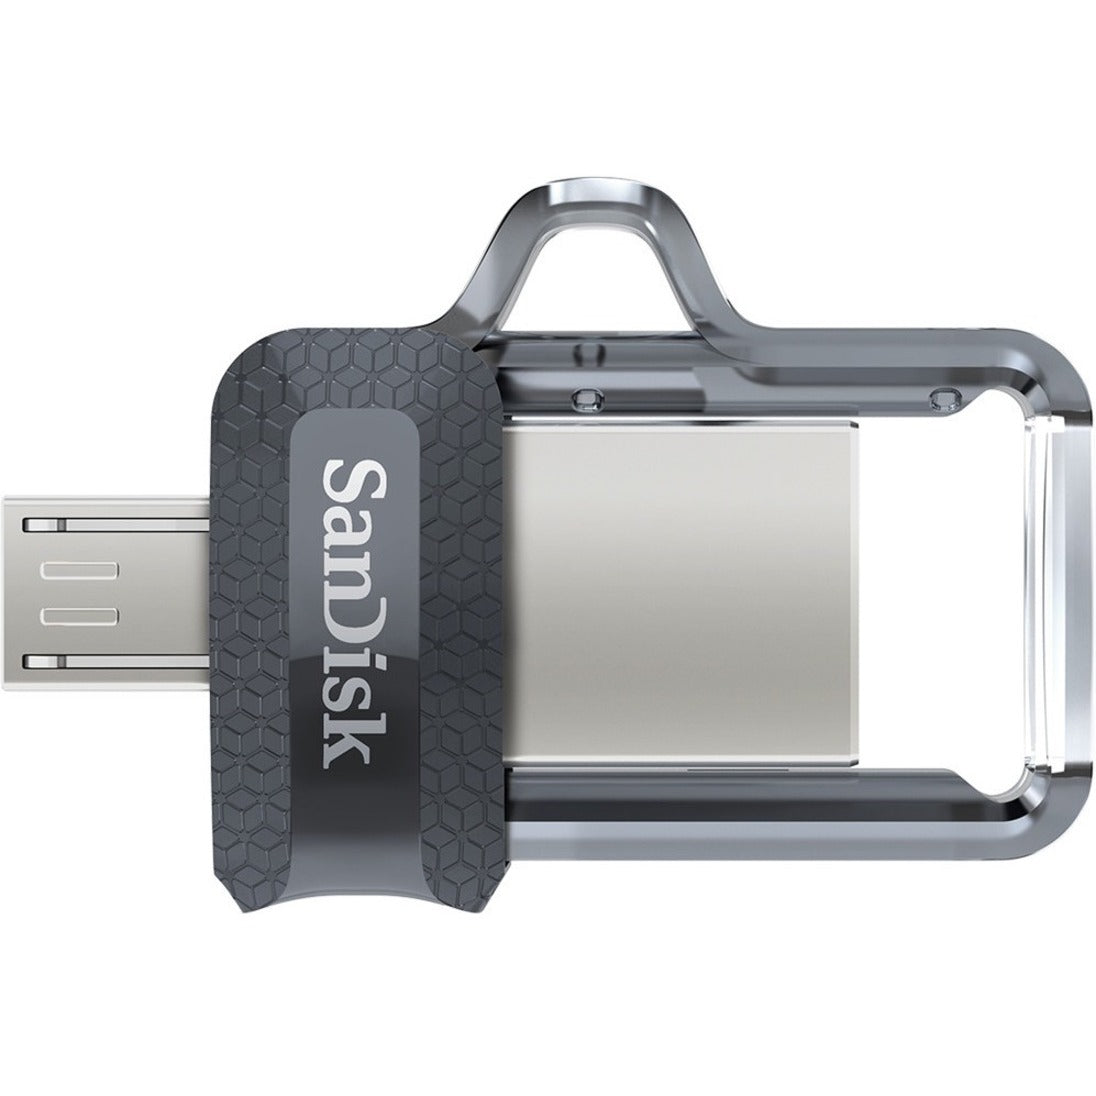 サンディスク SDDD3-064G-A46 ウルトラ デュアル ドライブ m3.0 - 64GB、USB 3.0 フラッシュ ドライブ  ブランド名: サンディスク (SanDisk)